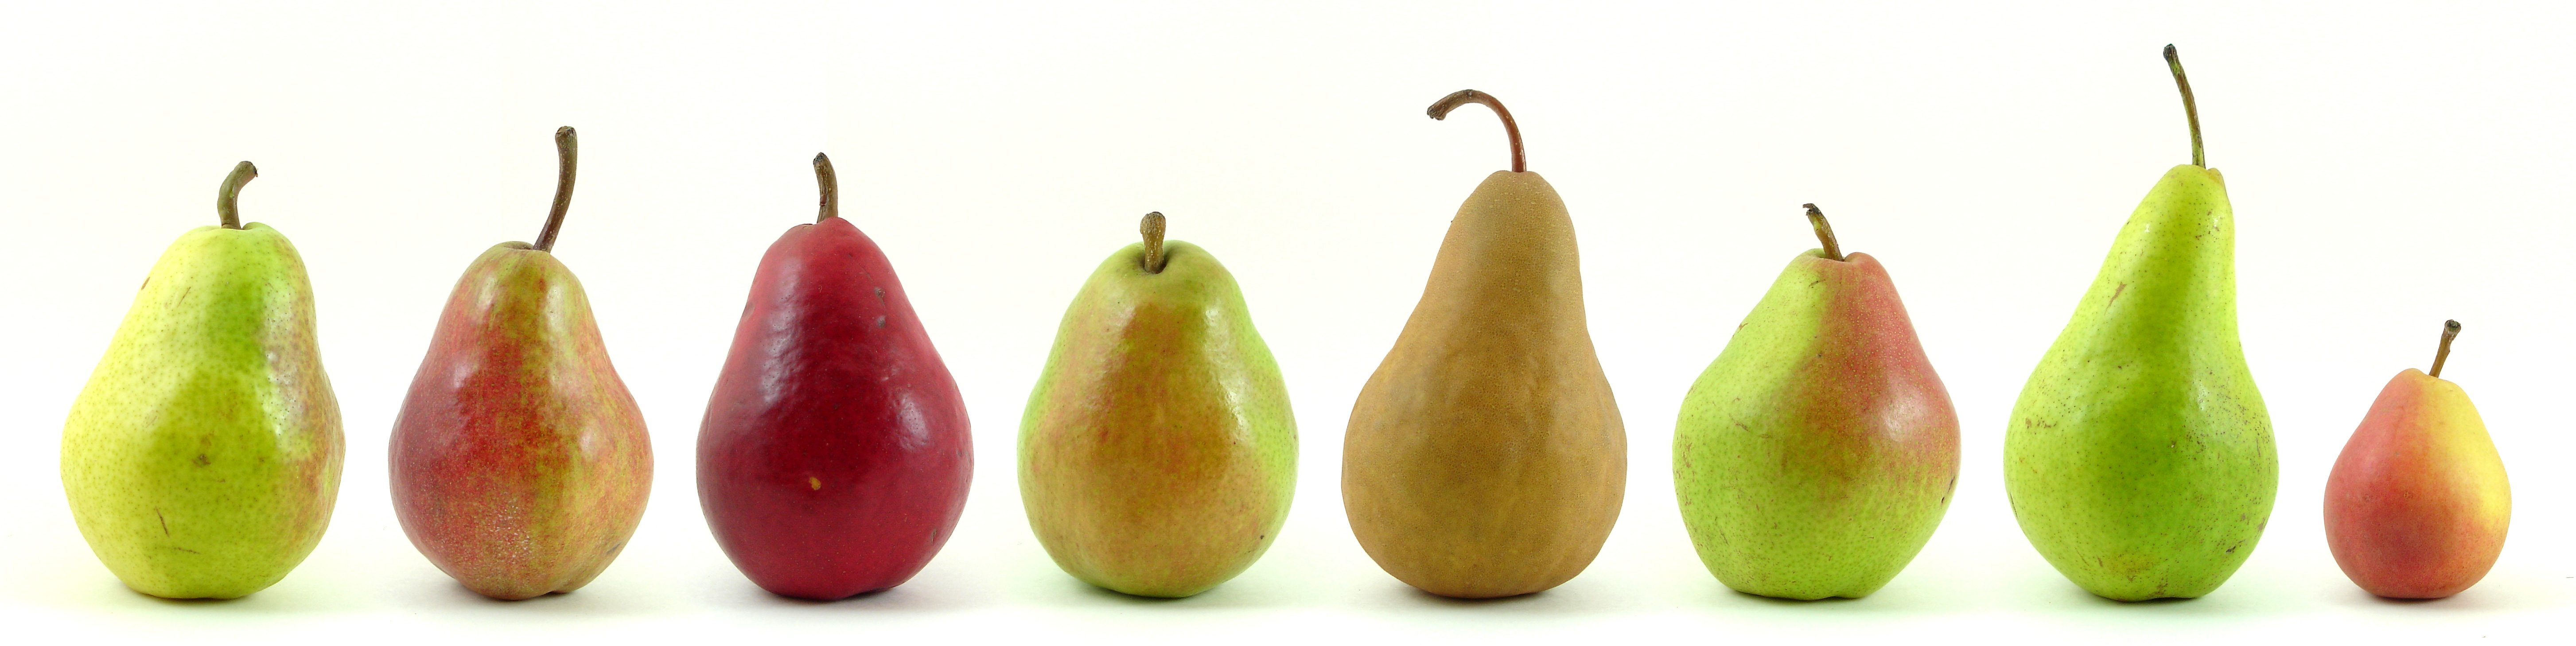 Eight_varieties_of_pears.jpg